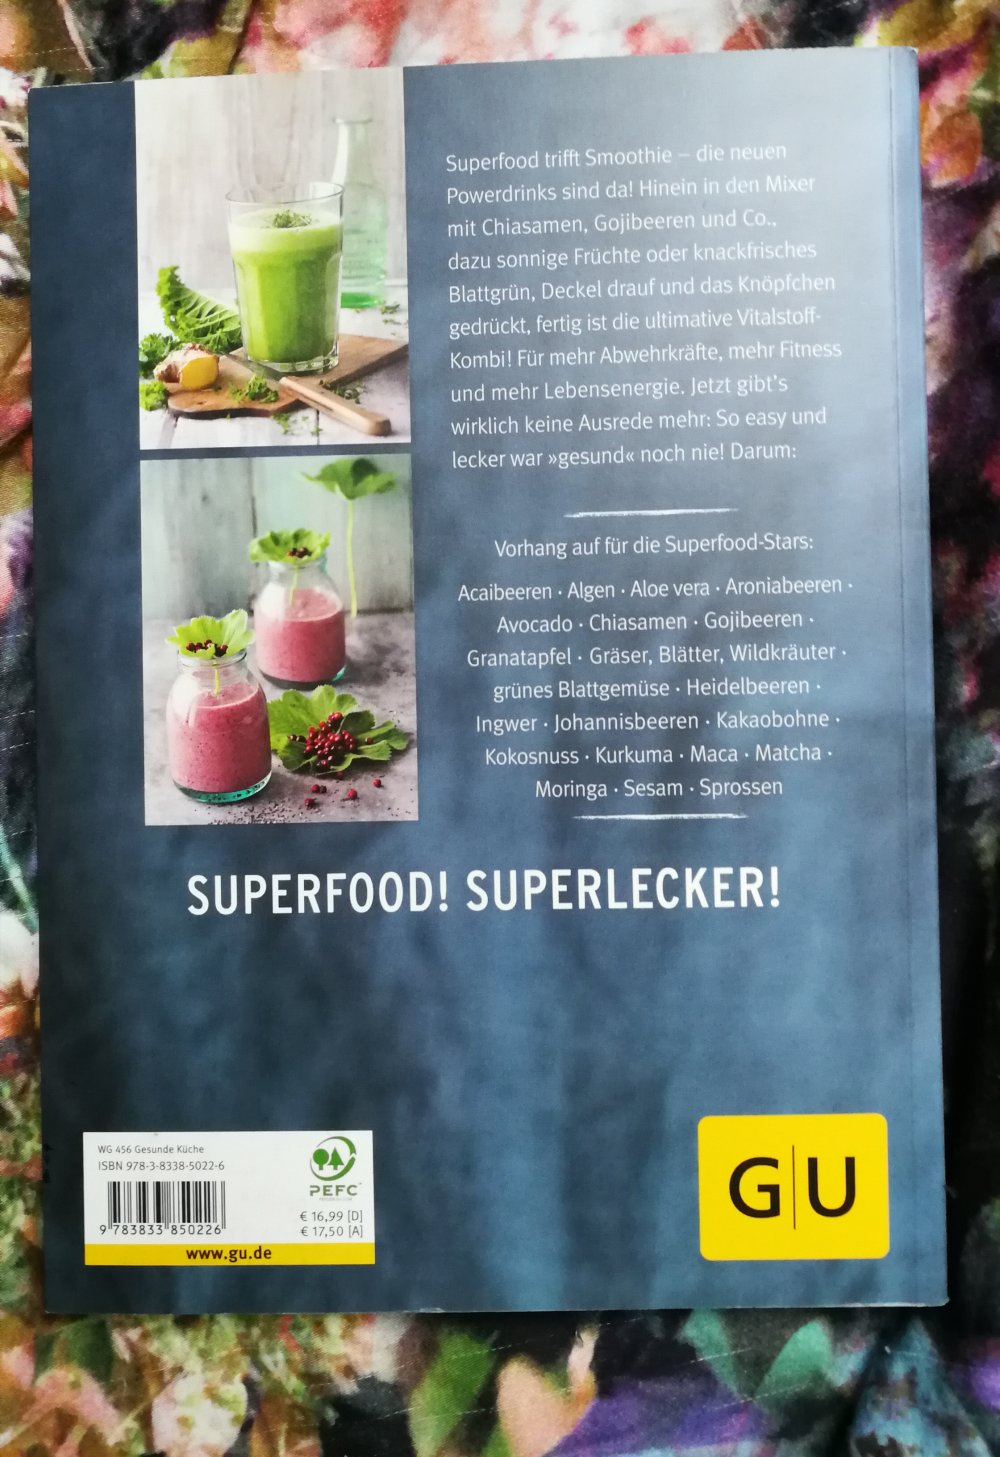 Buch Superfood Smoothies Vitalstoff-Power für mehr Energie 